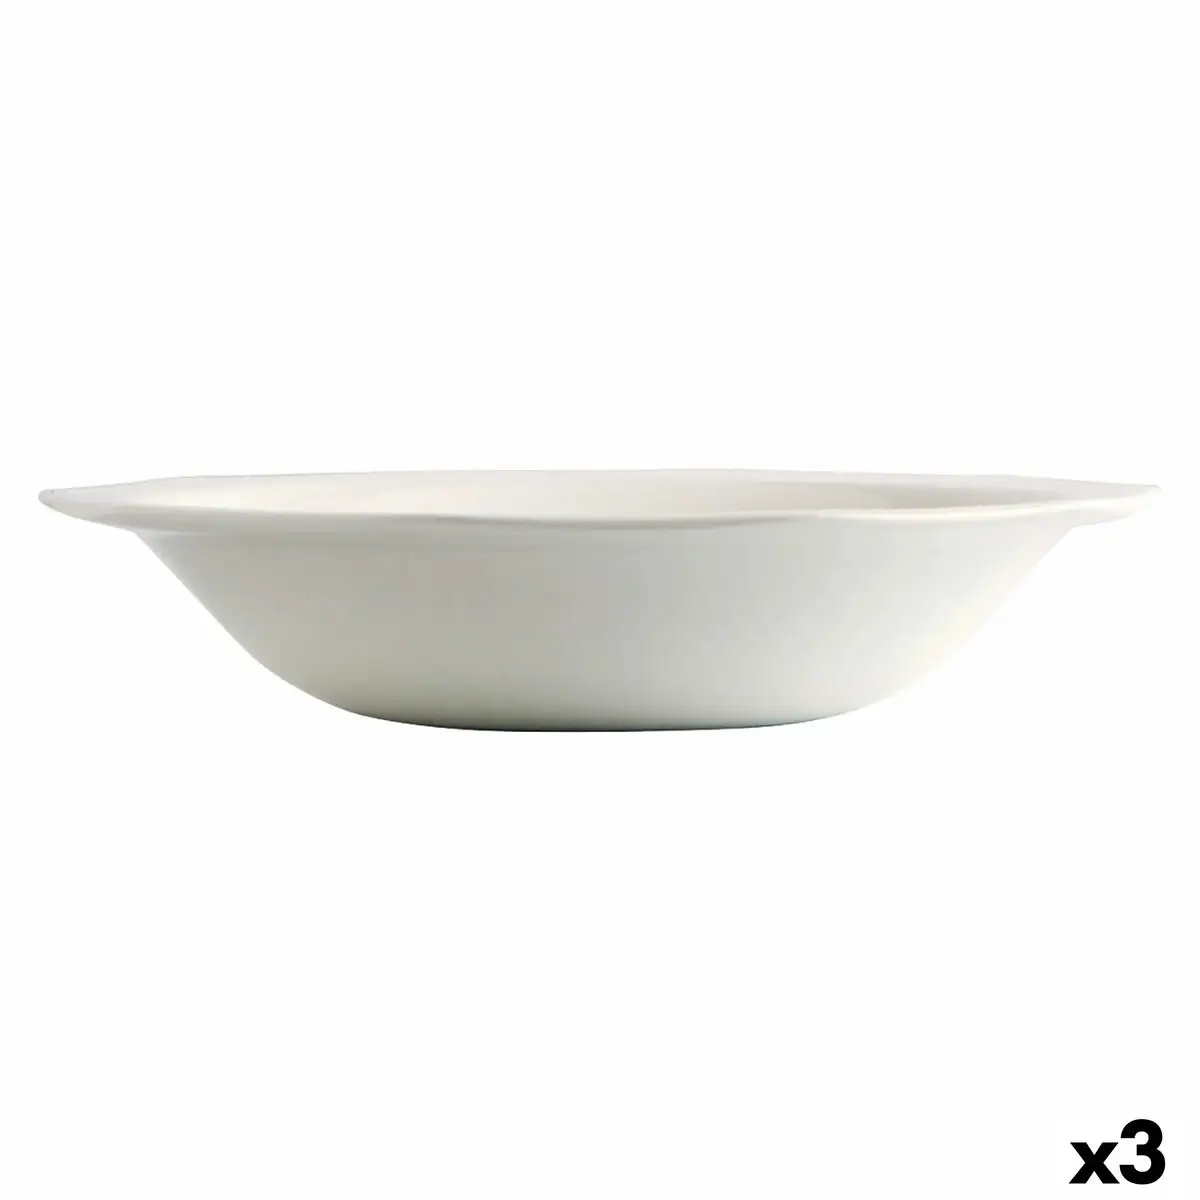 Saladier churchill artic ceramique blanc vaisselle o 27 5 cm 3 unites _6078. Bienvenue sur DIAYTAR SENEGAL - Où Chaque Détail compte. Plongez dans notre univers et choisissez des produits qui ajoutent de l'éclat et de la joie à votre quotidien.